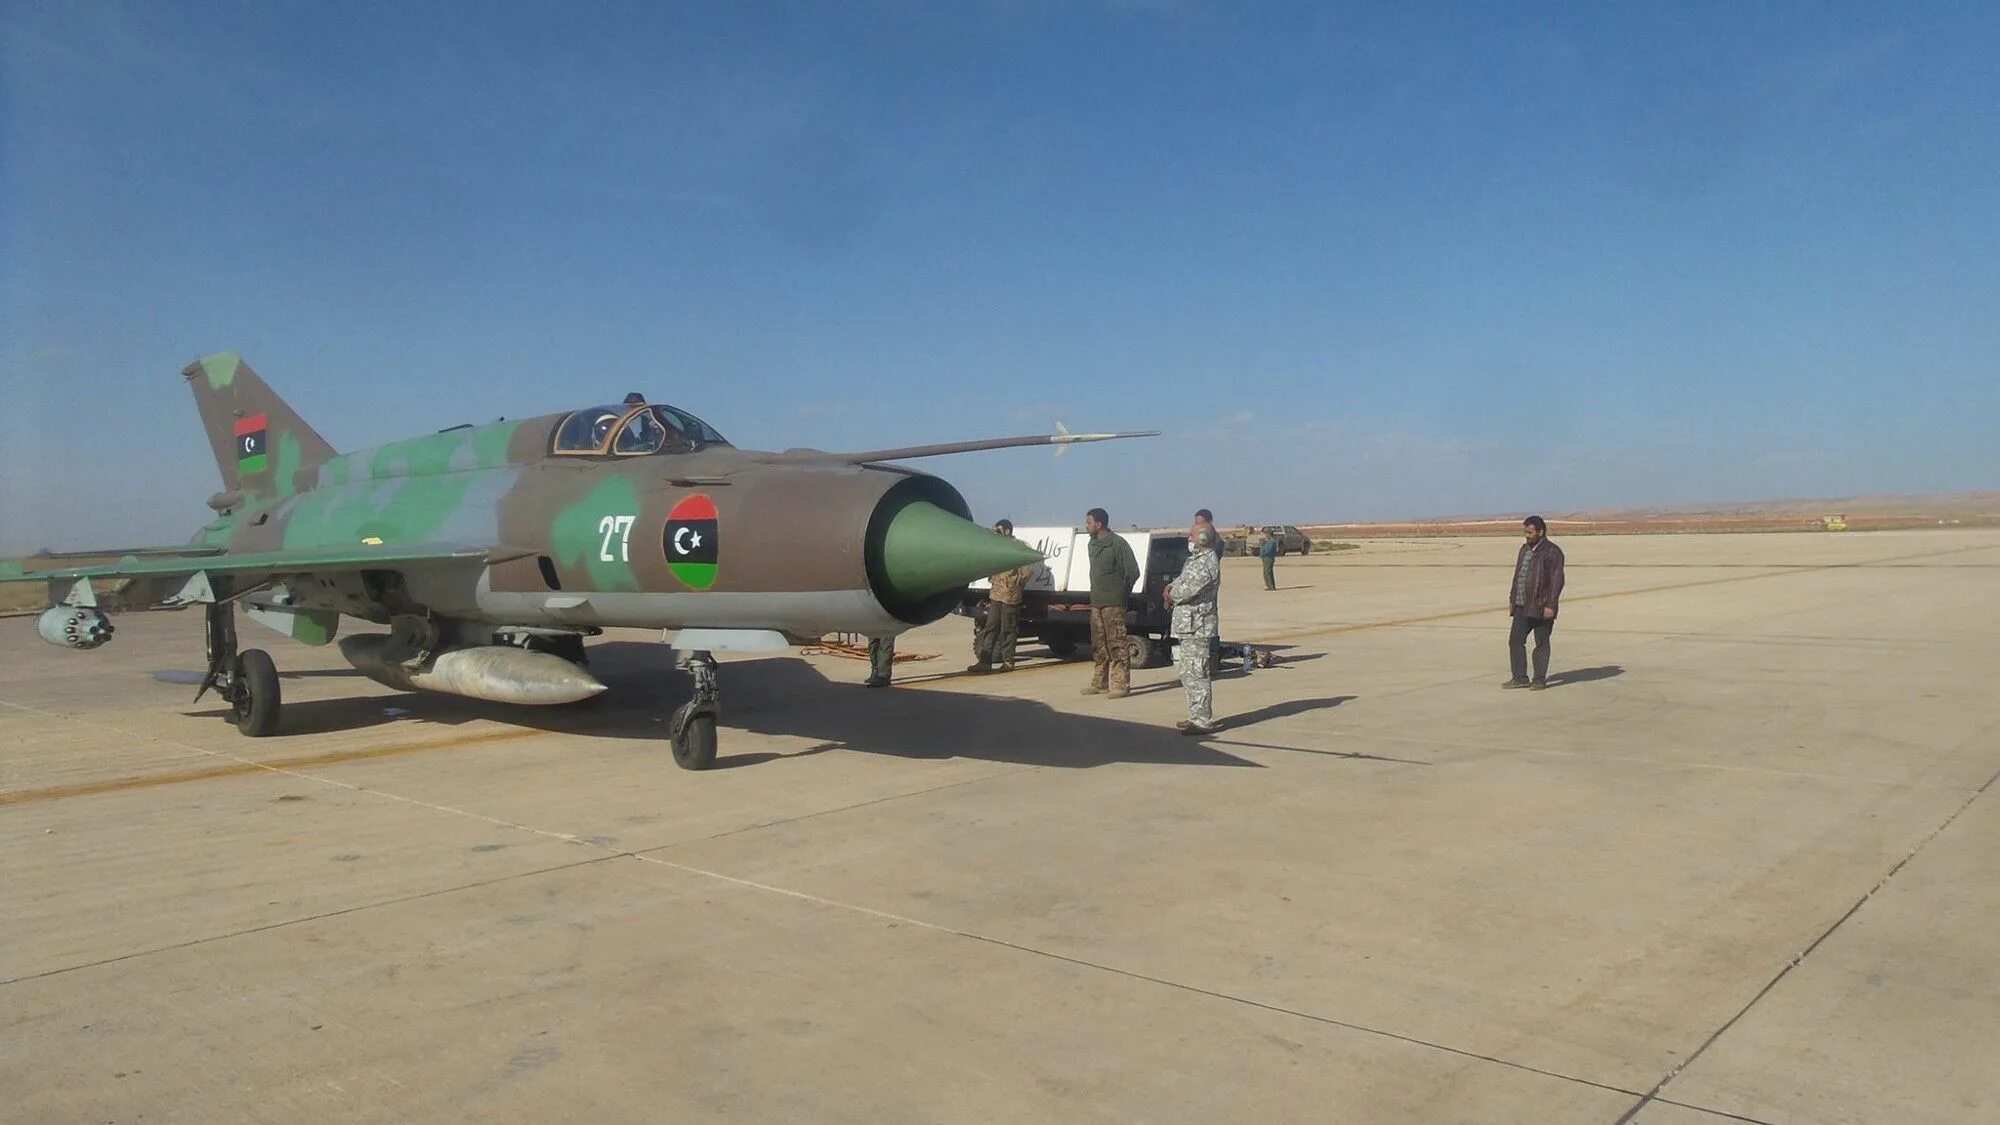 Убитый истребитель. Миг-23 ВВС Ливии. Mig 23 Libyan Air Force. Миг-21 бис ВВС Сирии. Миг-21 Египет.